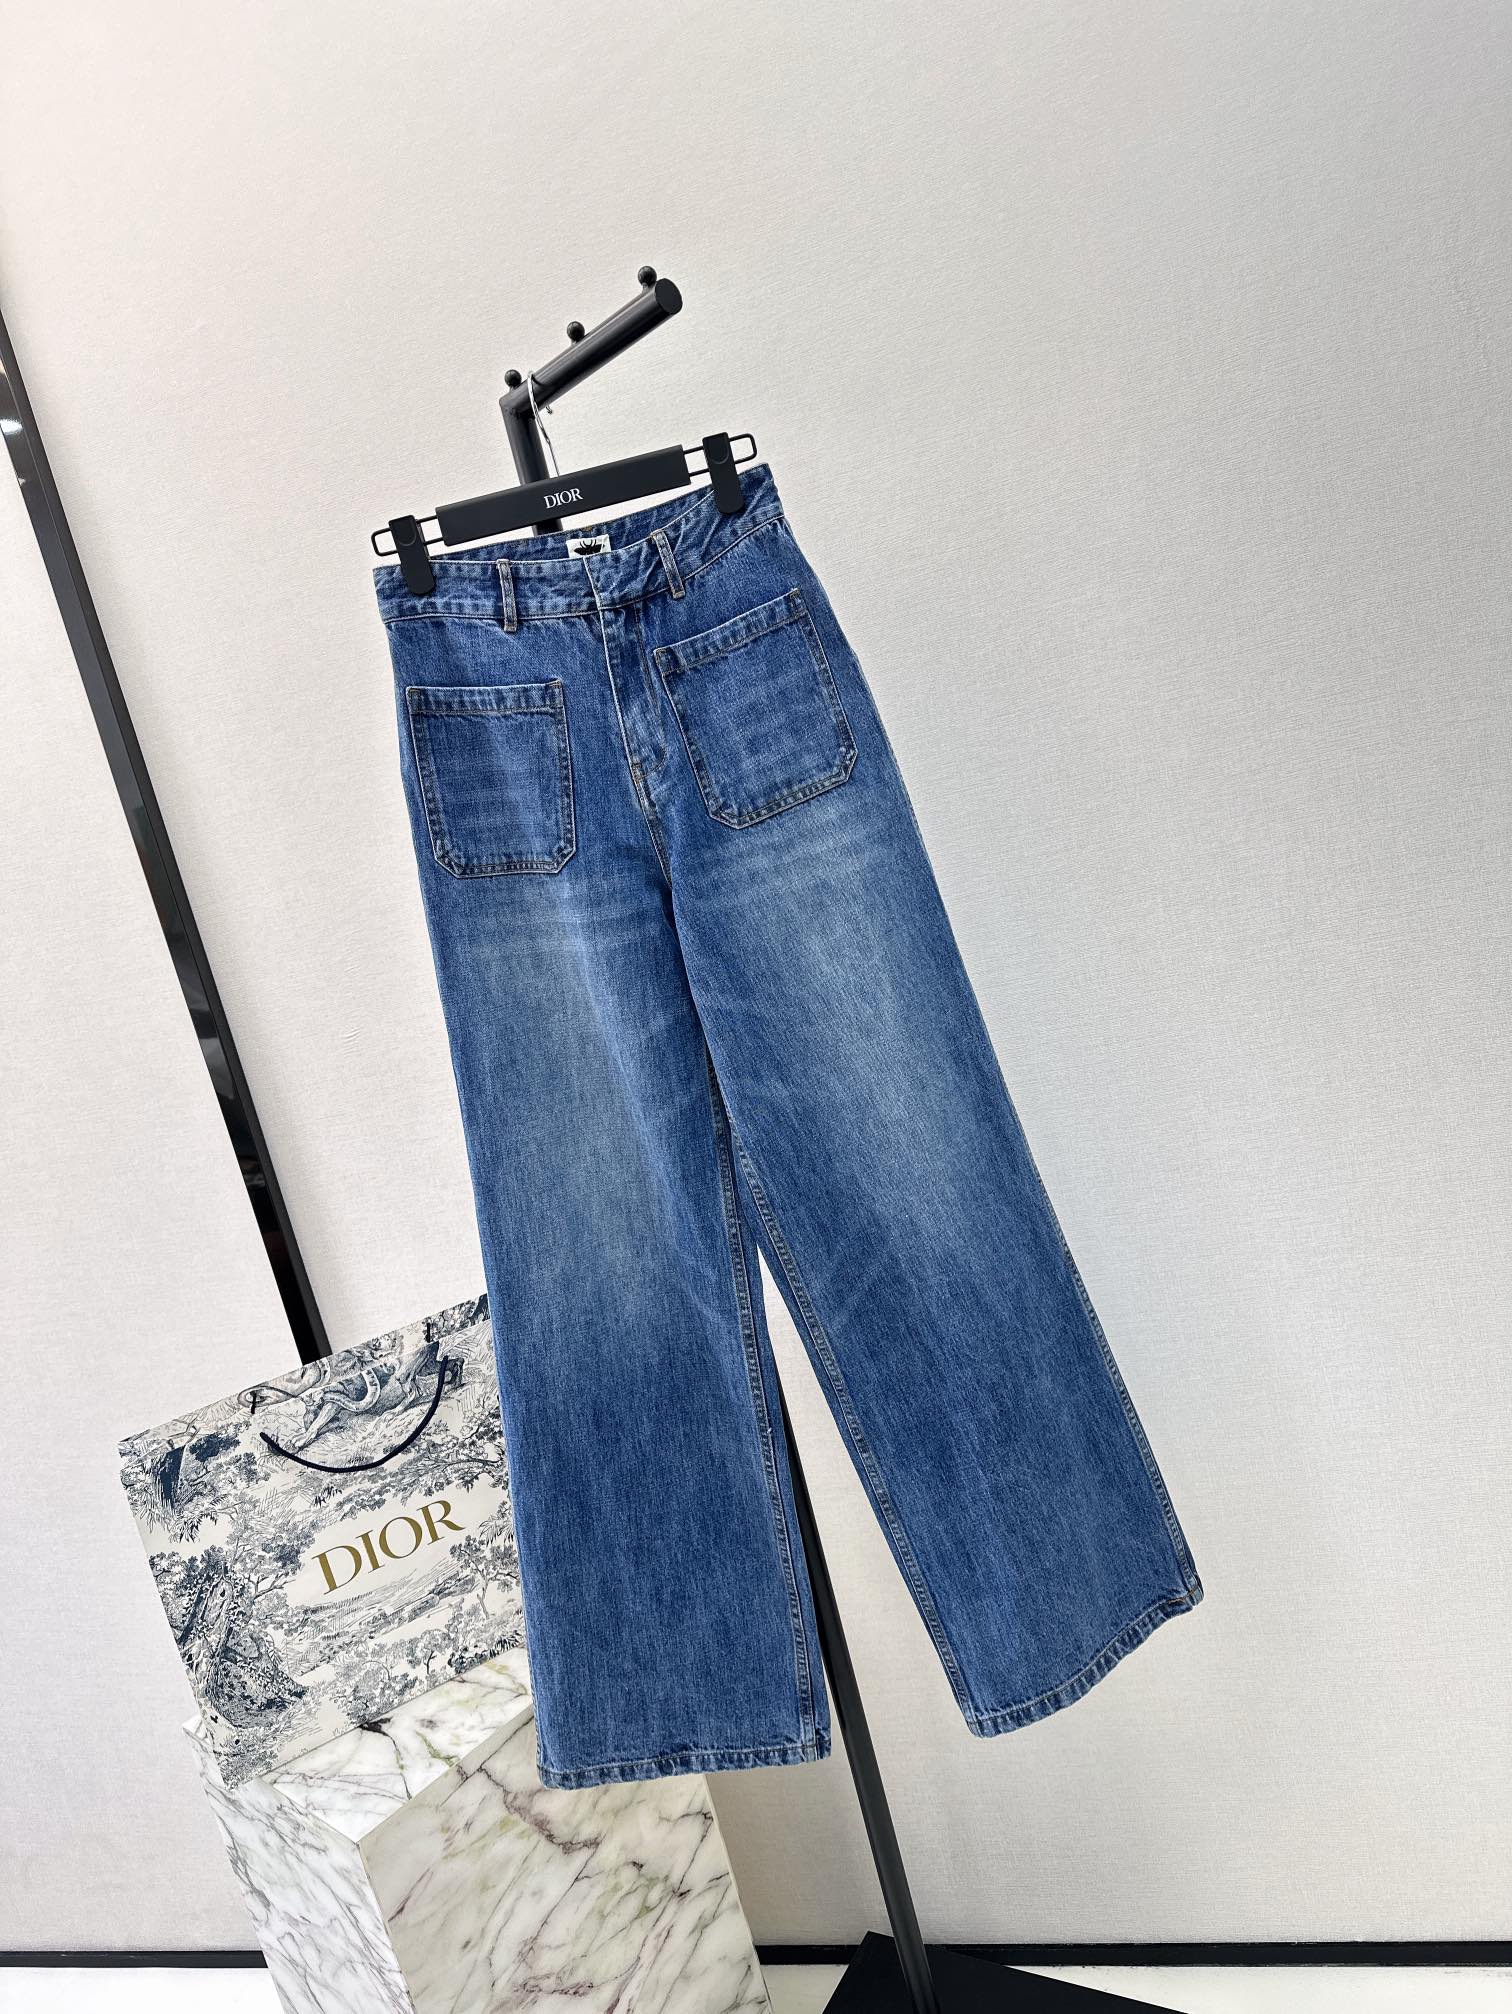 CD24Ss春夏最新款中高腰双口袋直筒牛仔裤原版定制复古蓝洗水工艺高级又时髦进口牛仔面料酵素洗水工艺衣橱